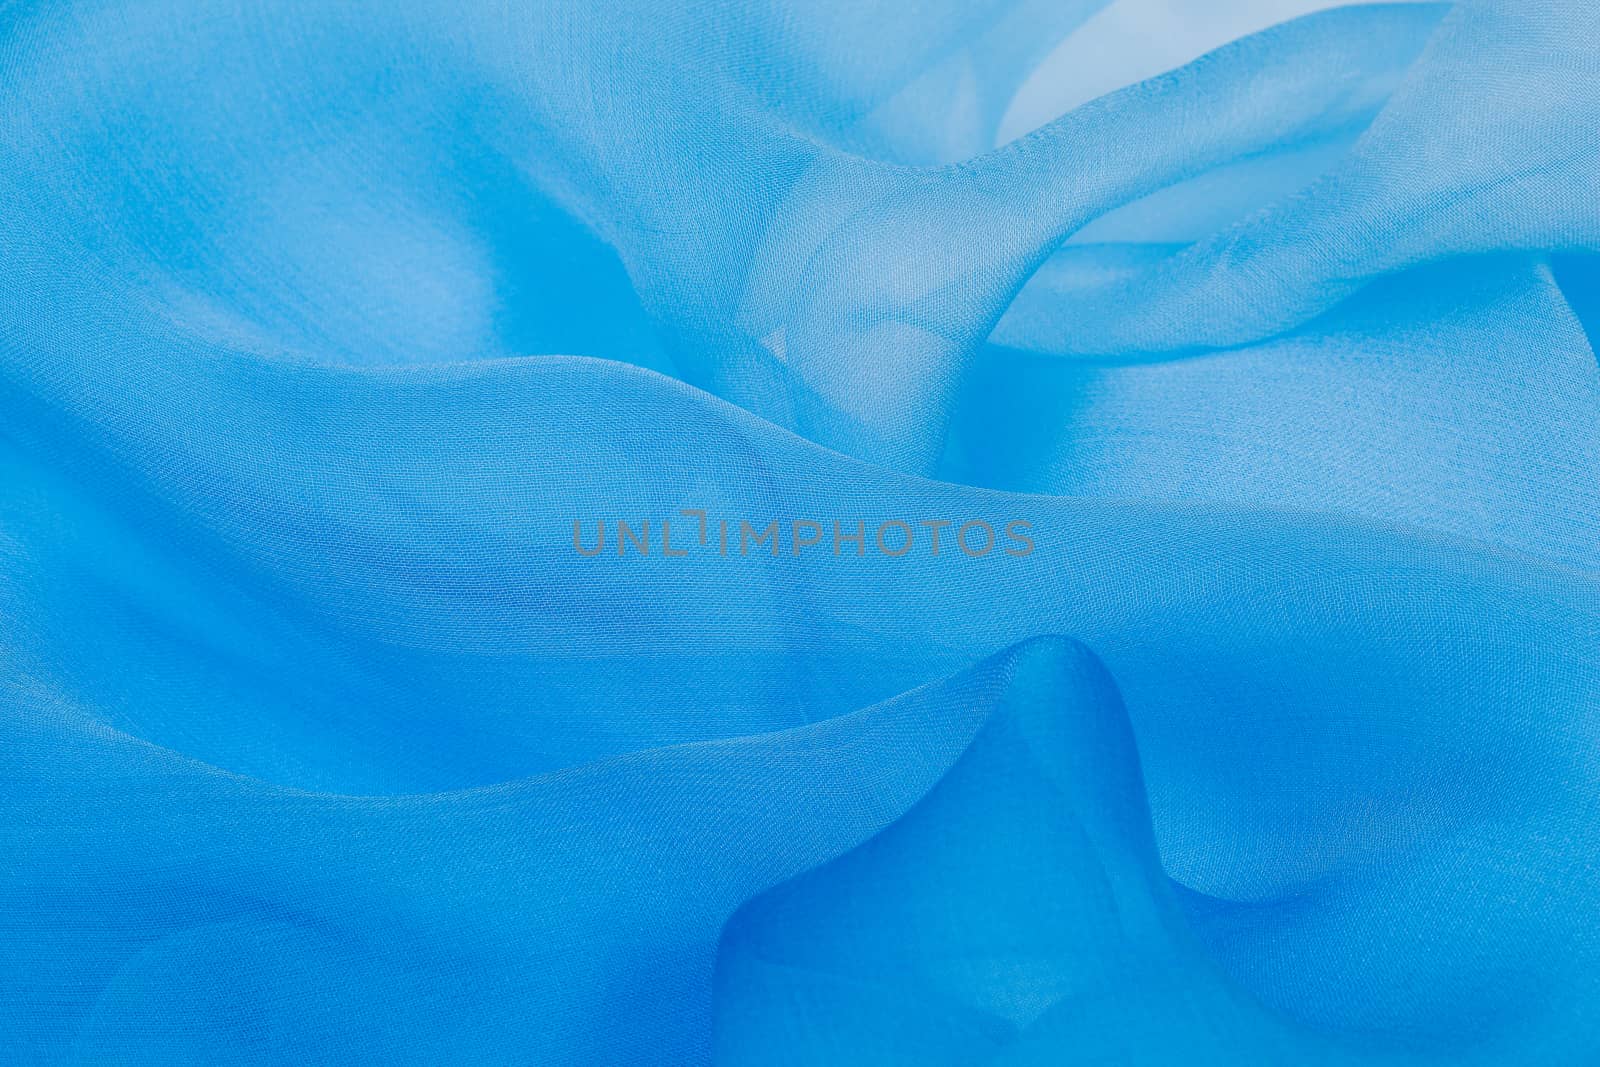 Blue silk by Slast20